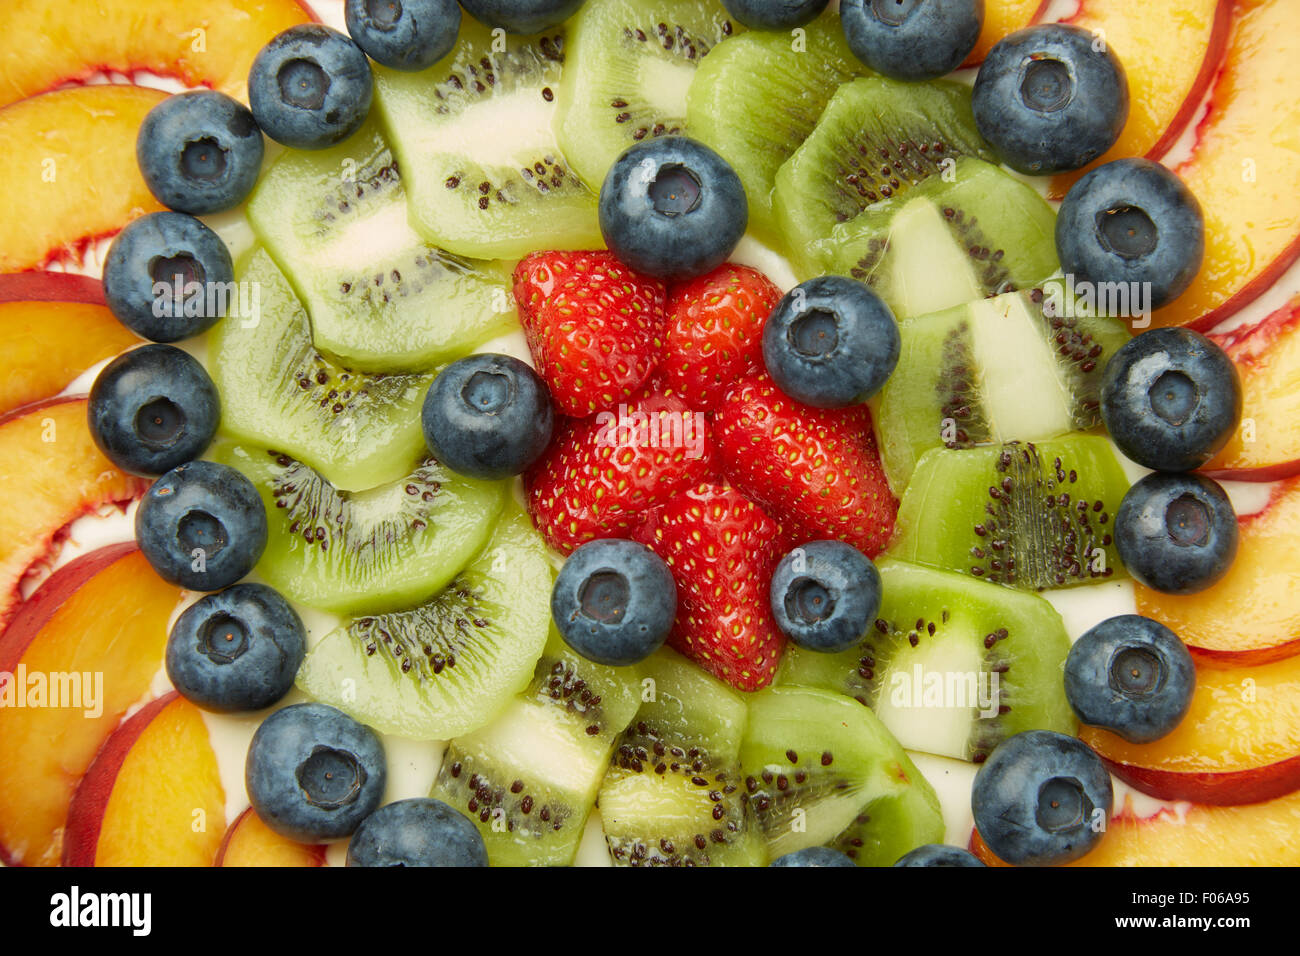 Un alto ángulo de disparo de arándanos frescos, fresas, manzanas y kiwis en la cima de una deliciosa tarta Foto de stock